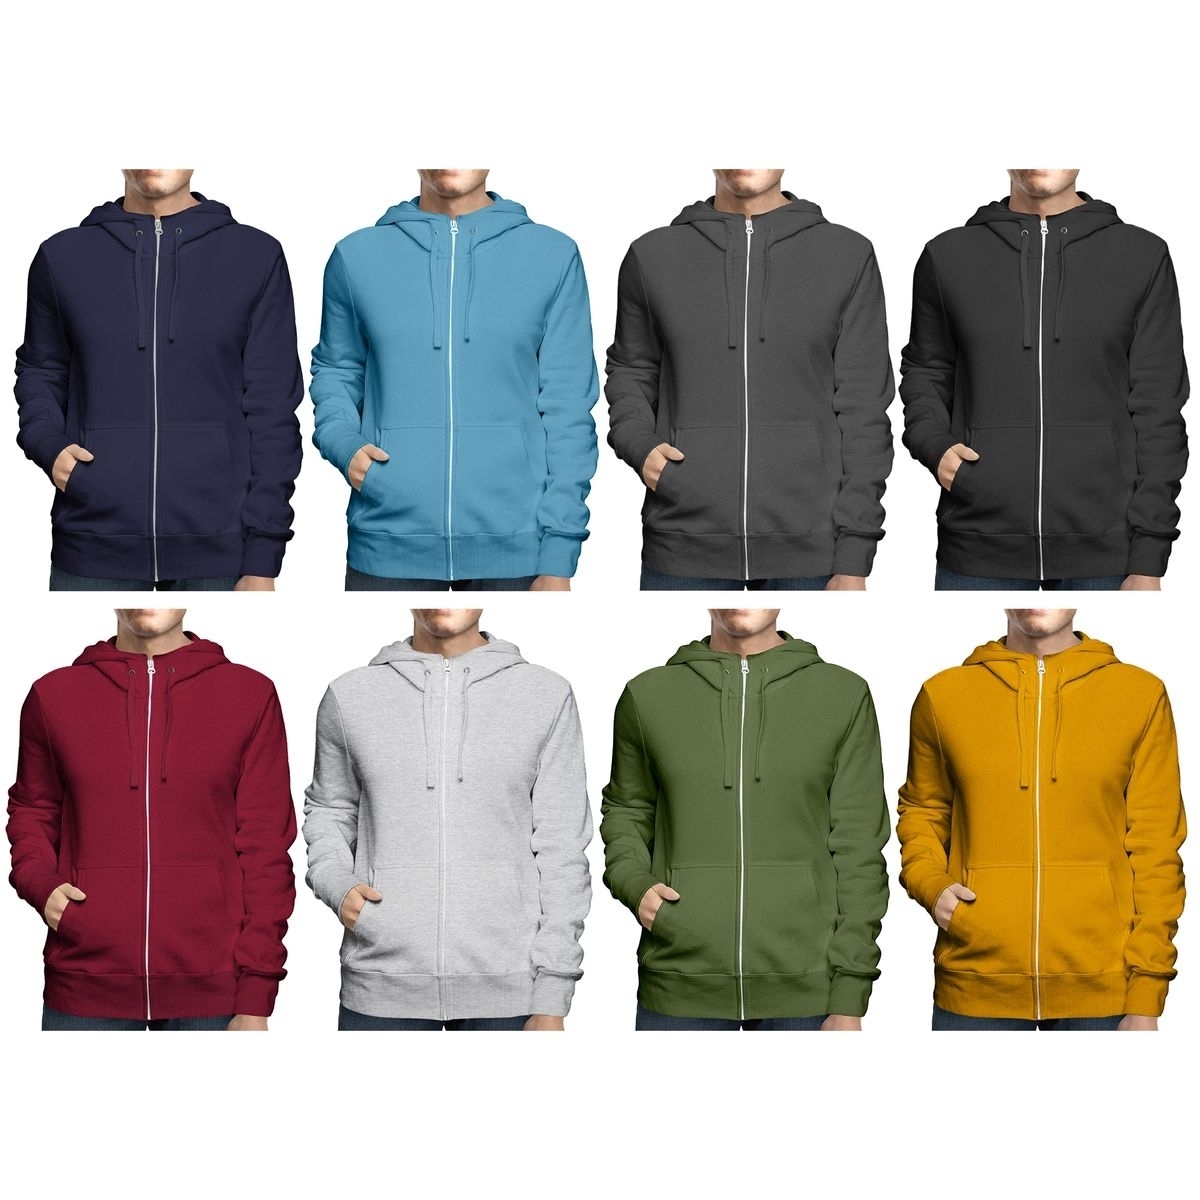 2-Pack: Men's Winter Warm Soft Cozy Full Zip-Up Fleece Lined Hoodie Sweatshirt - 3X